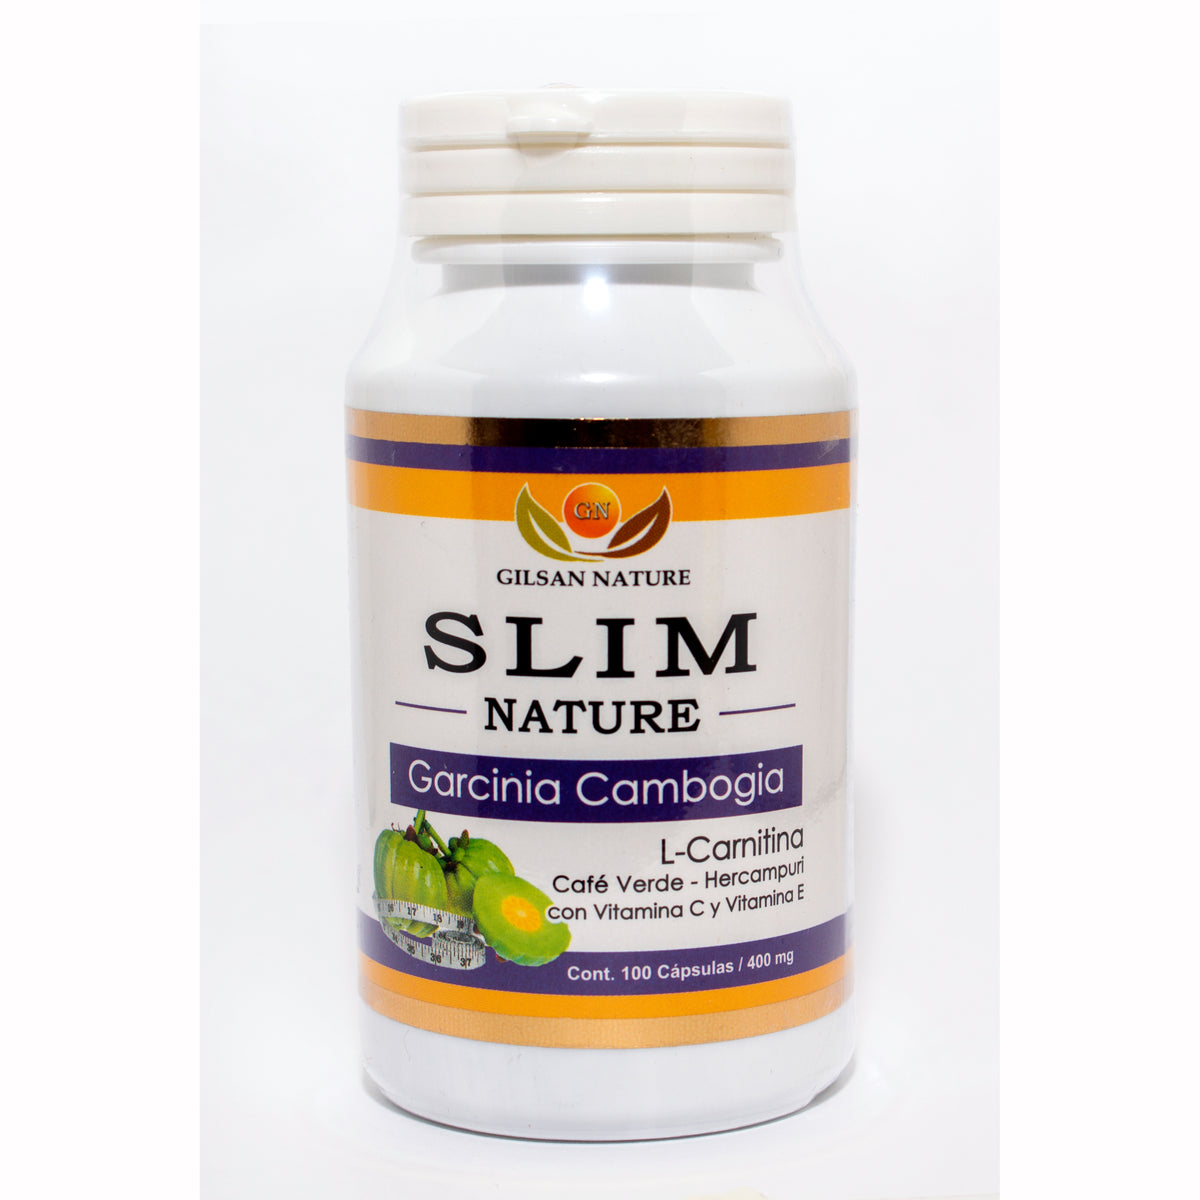 SLIM NATURE 100 cápsulas - Reducción de peso y Control de las grasas